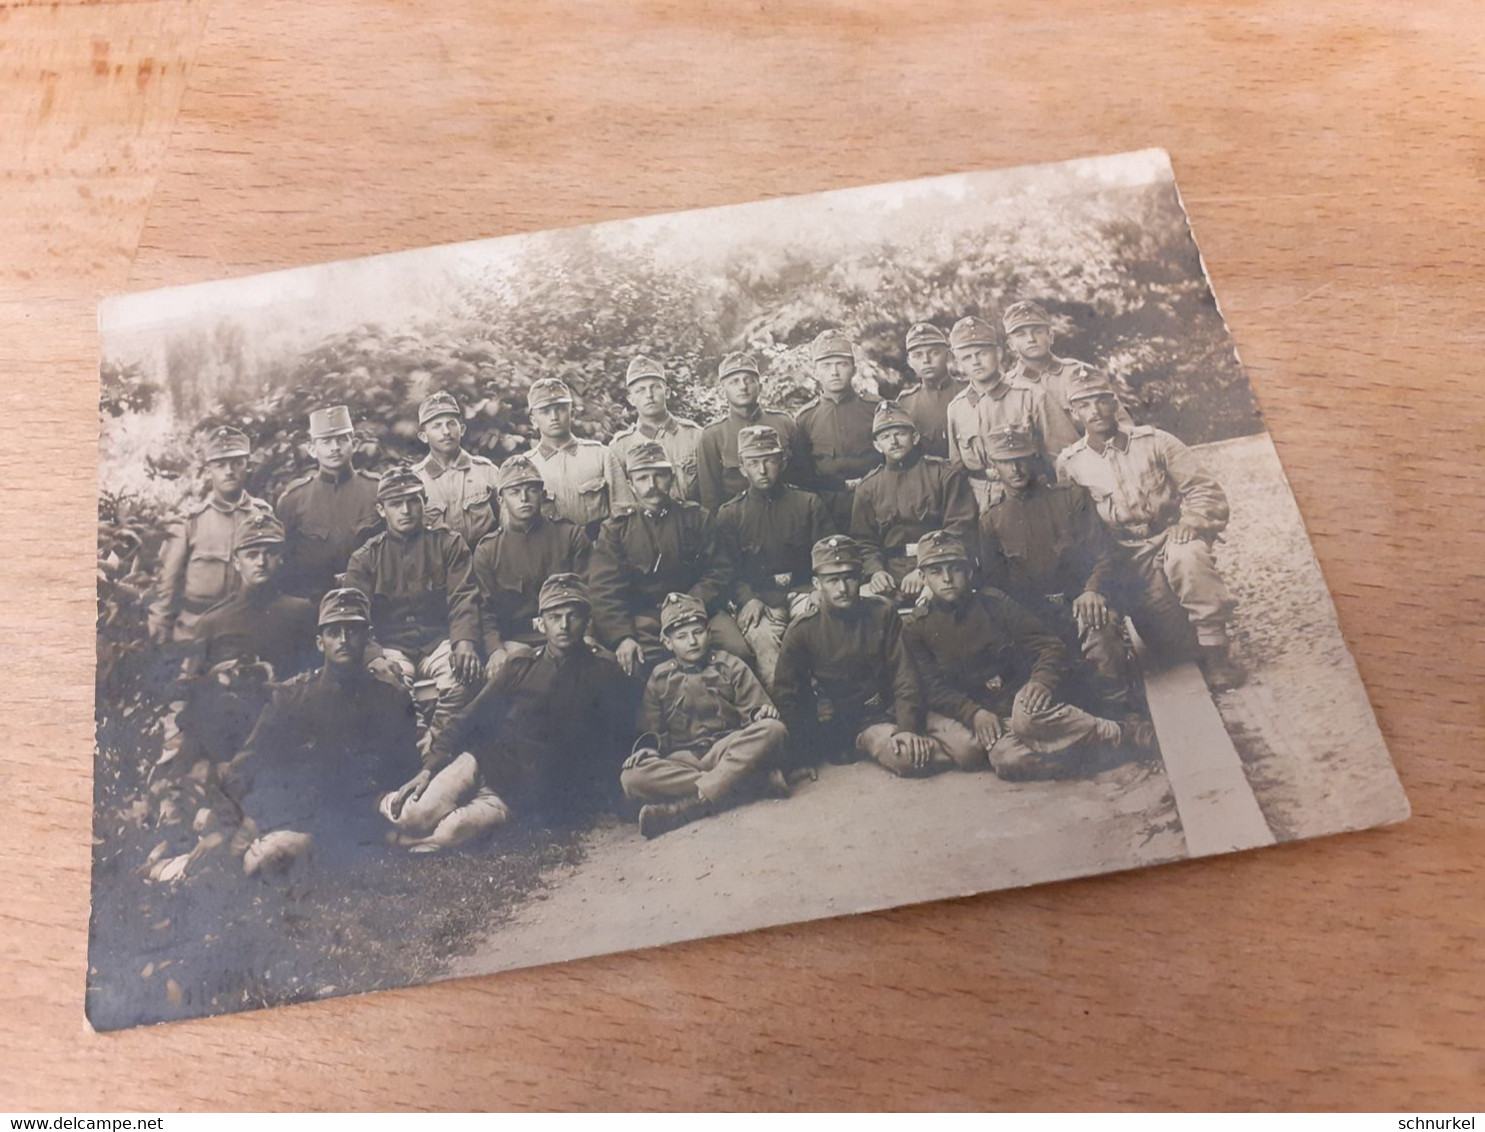 GRUPPE SOLDATEN OFFIZIERE MIT JUNGEN IN UNIFORM IN POSE - 1914 - Von BENESOR Nach BUDWEIS PRAG - TSCHECHIEN - War, Military